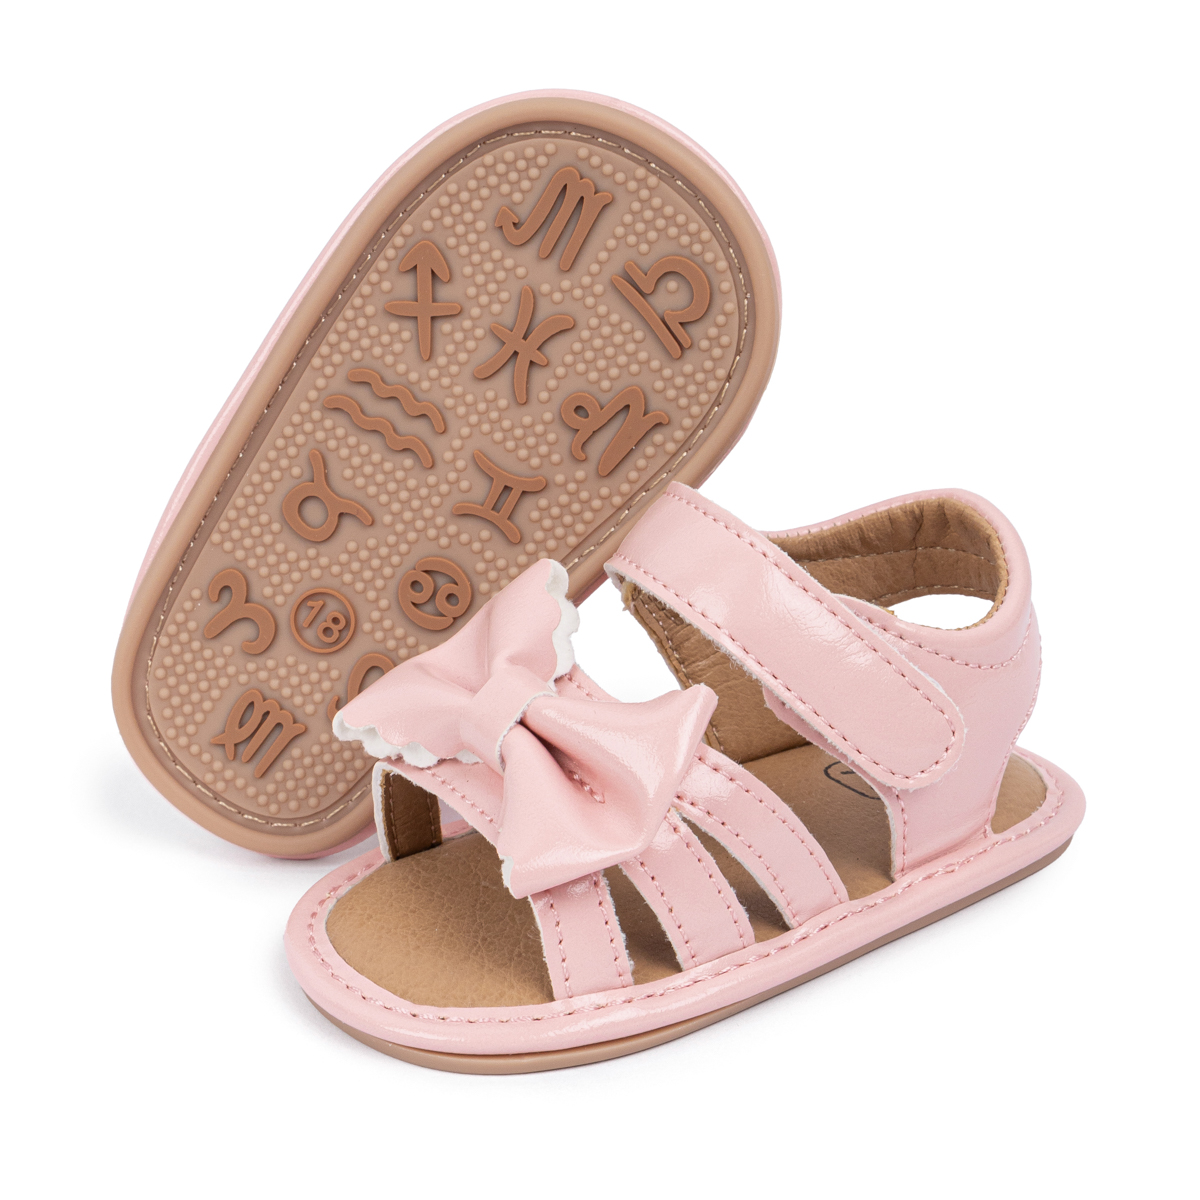 PU Upper PVC Anti-slip sole Baby Sandals